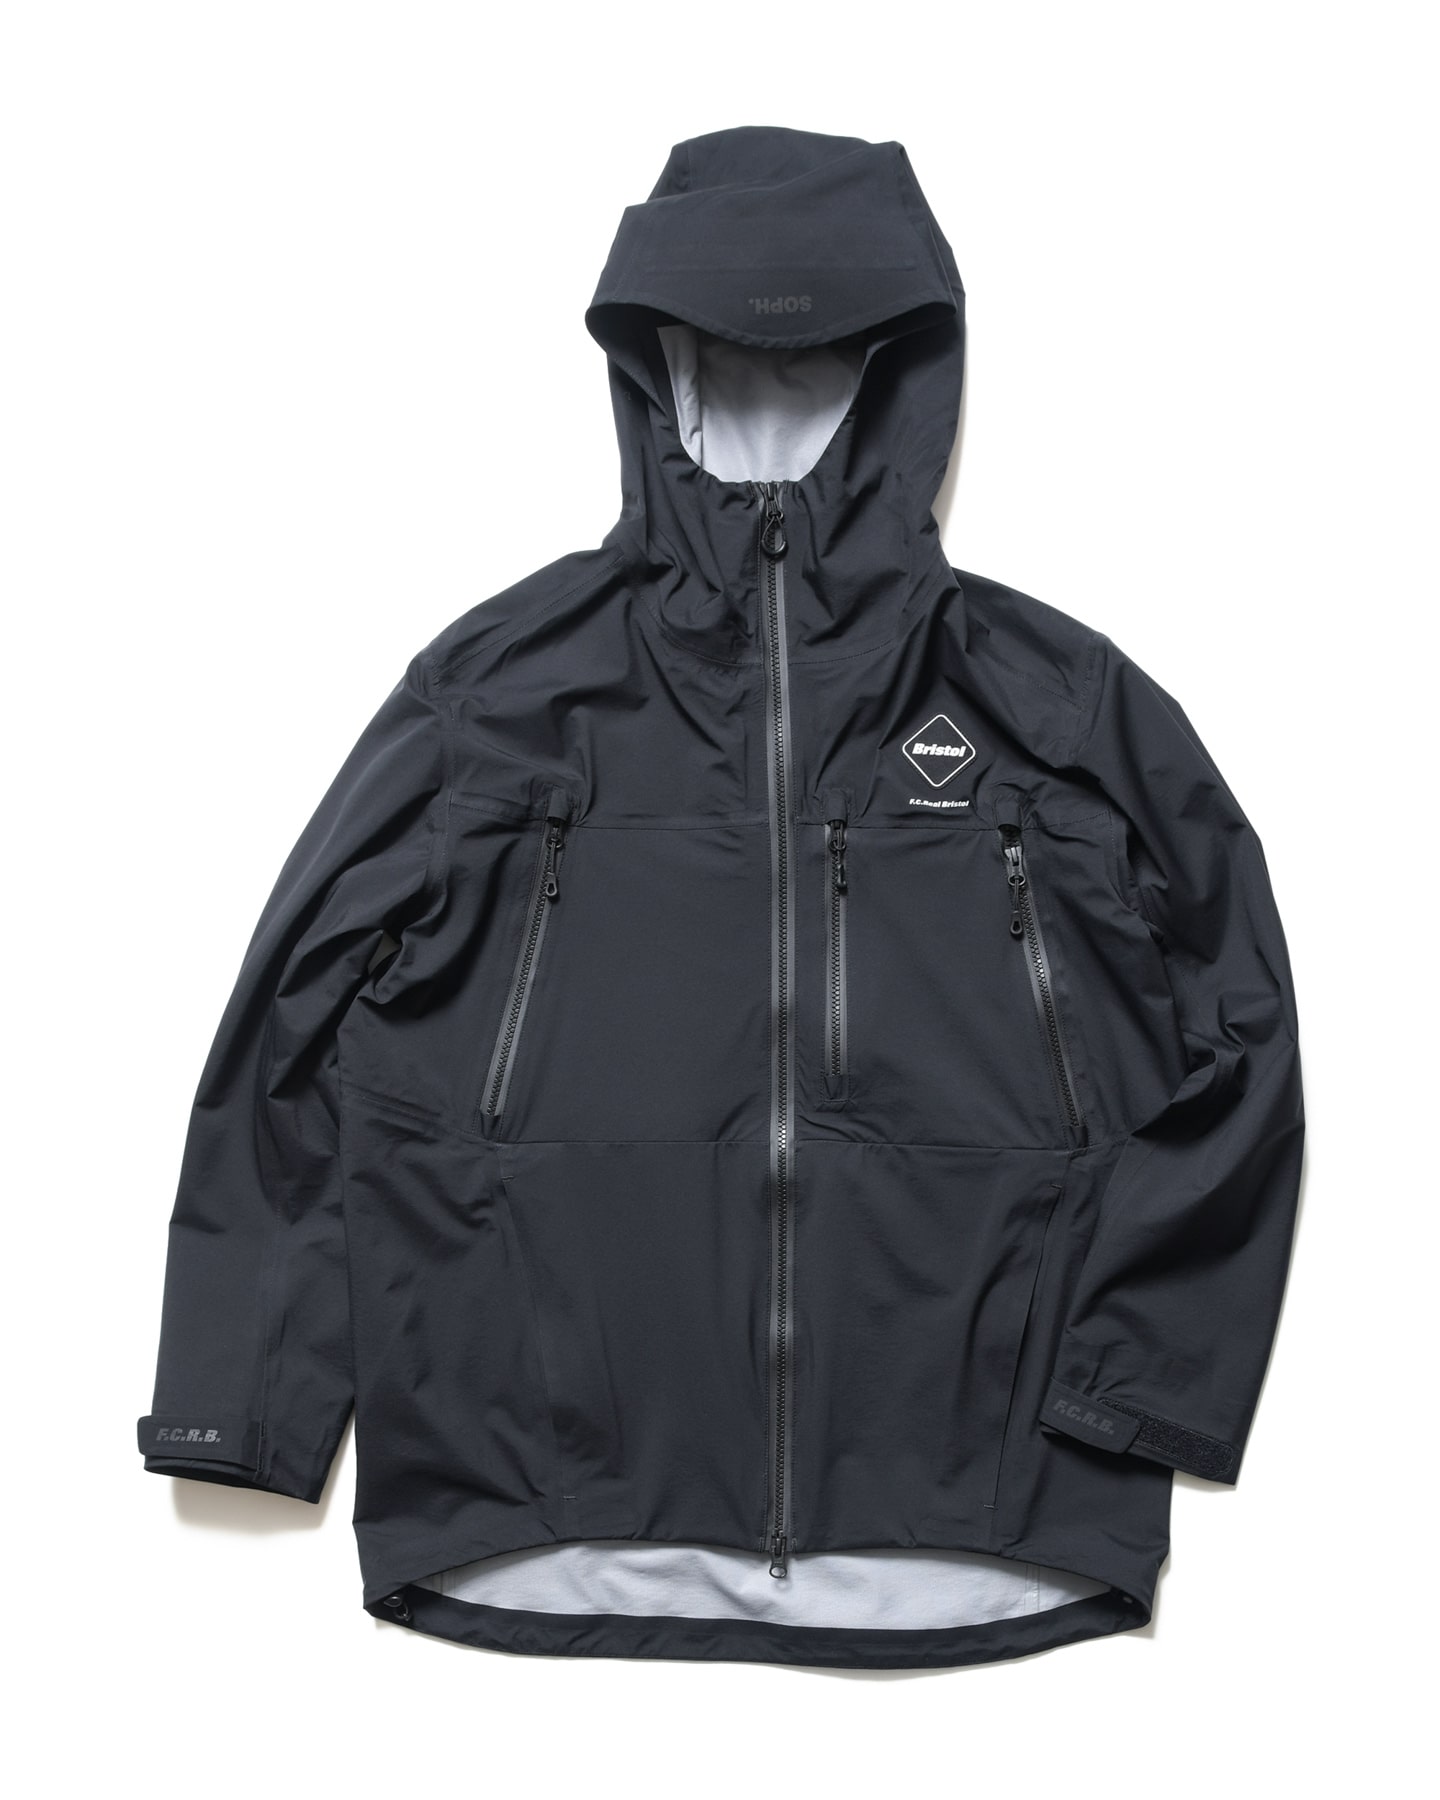 FCRB 19ss rain jacket L 黒 bristol